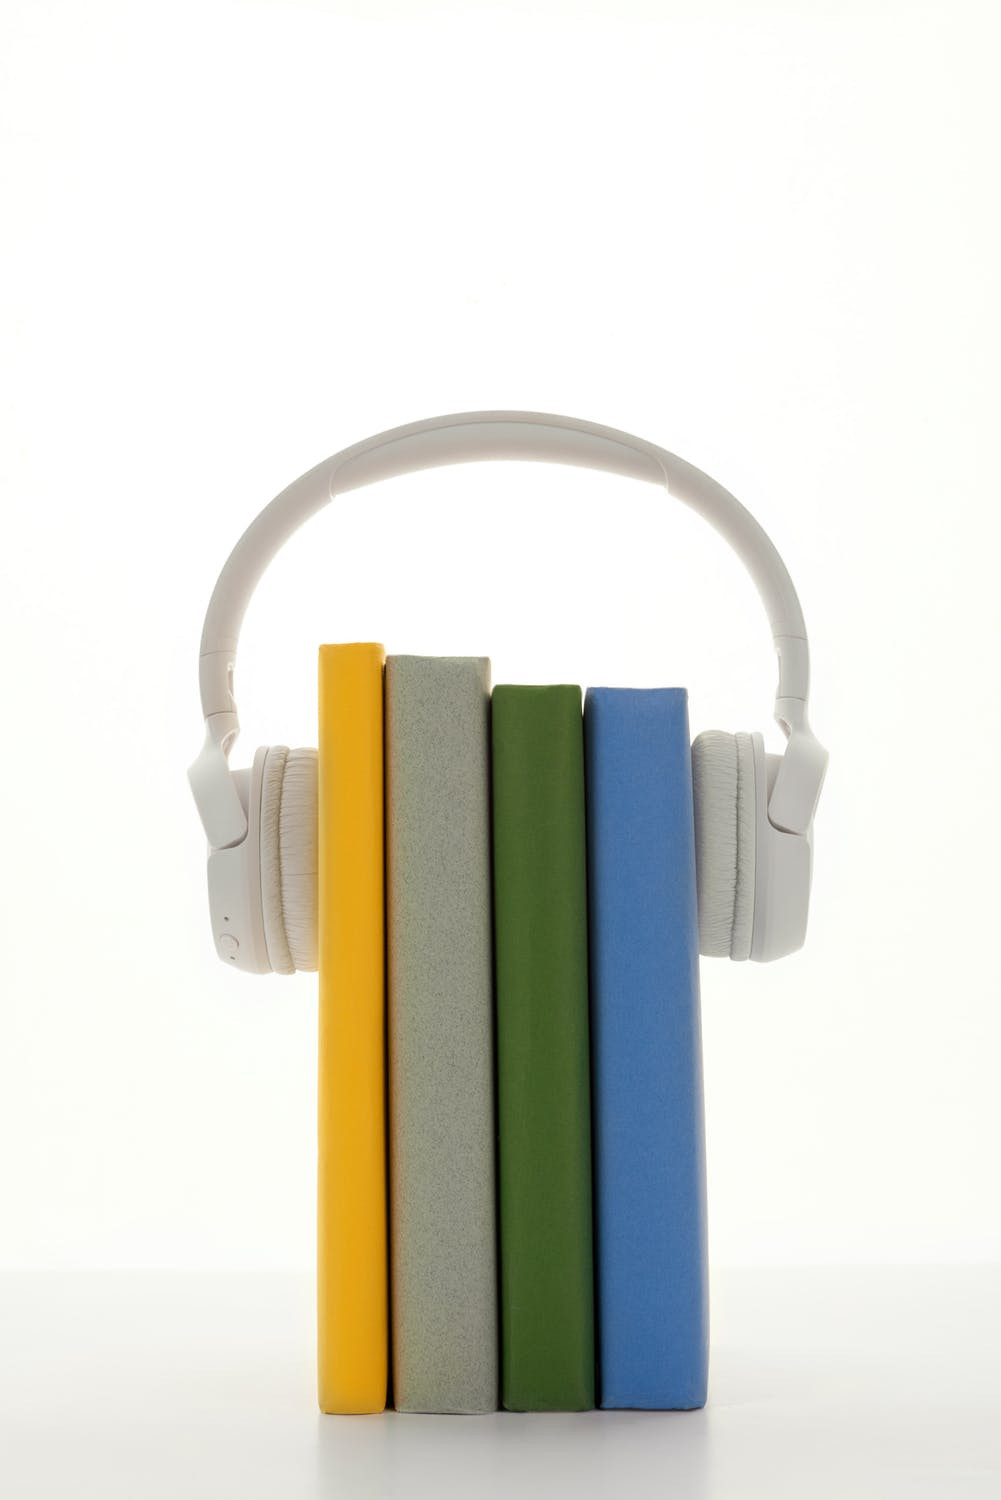 Libros y auricular PEXELS